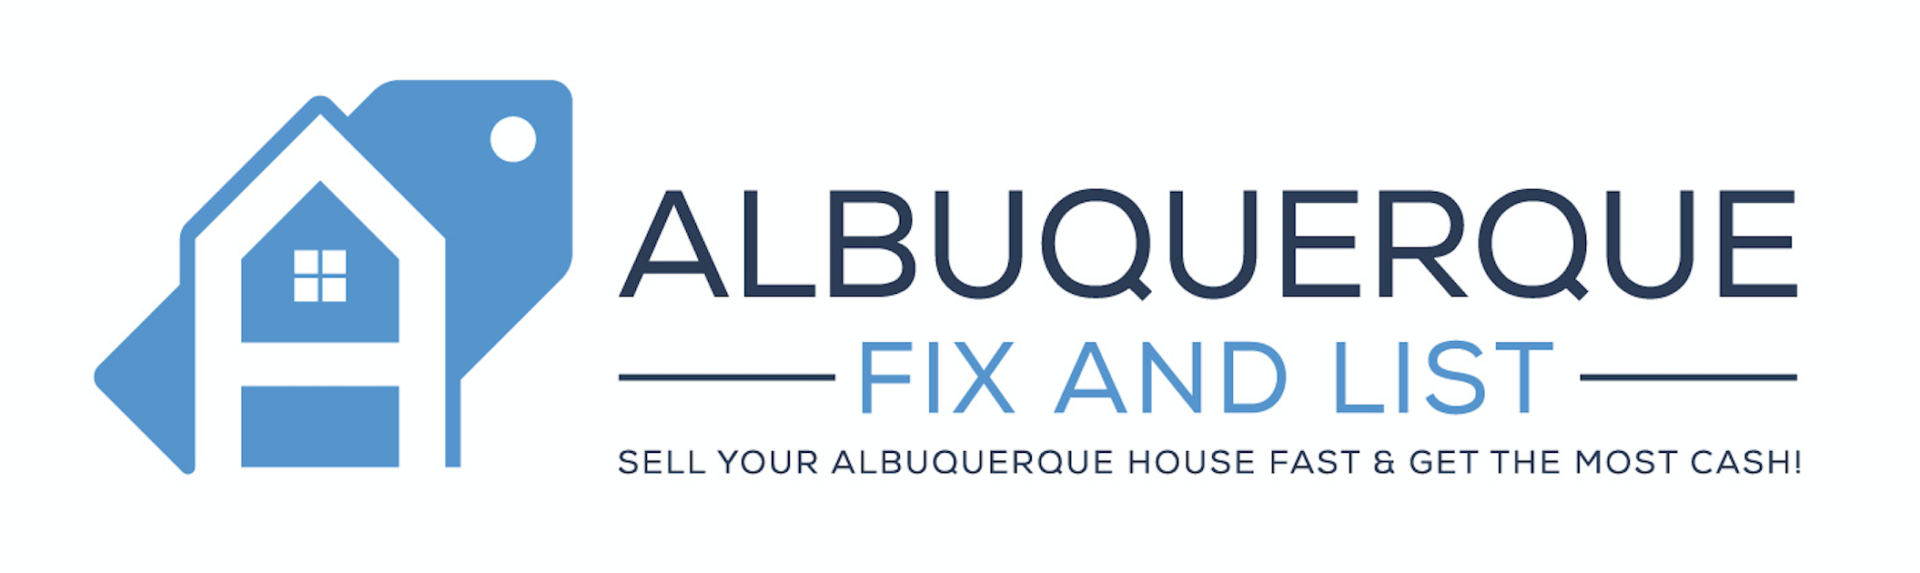 Albuquerque Fix And List logo